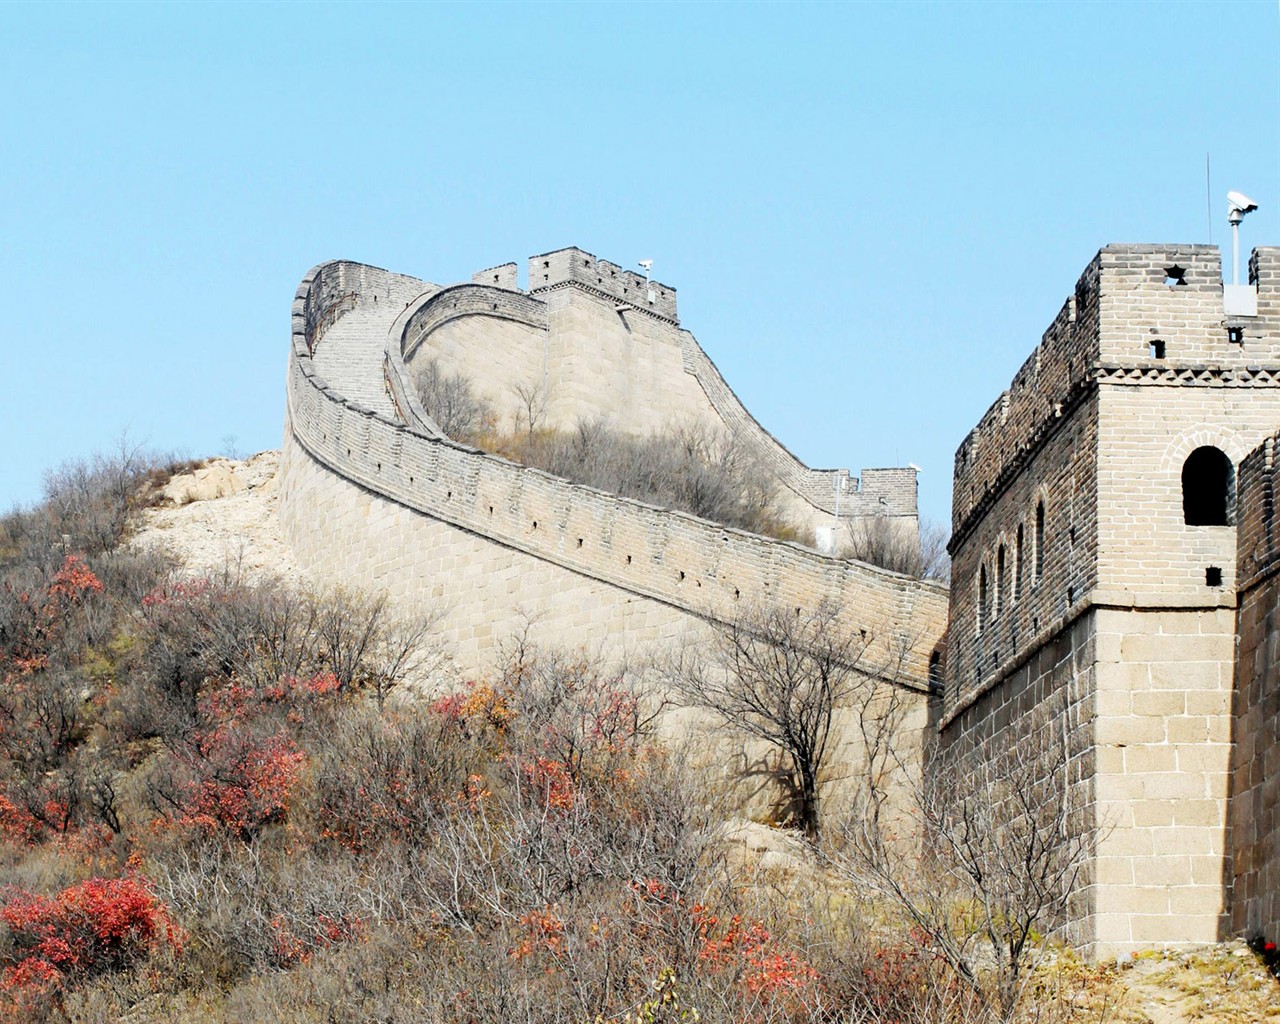 Beijing Tour - Badaling Great Wall (ggc works) #1 - 1280x1024